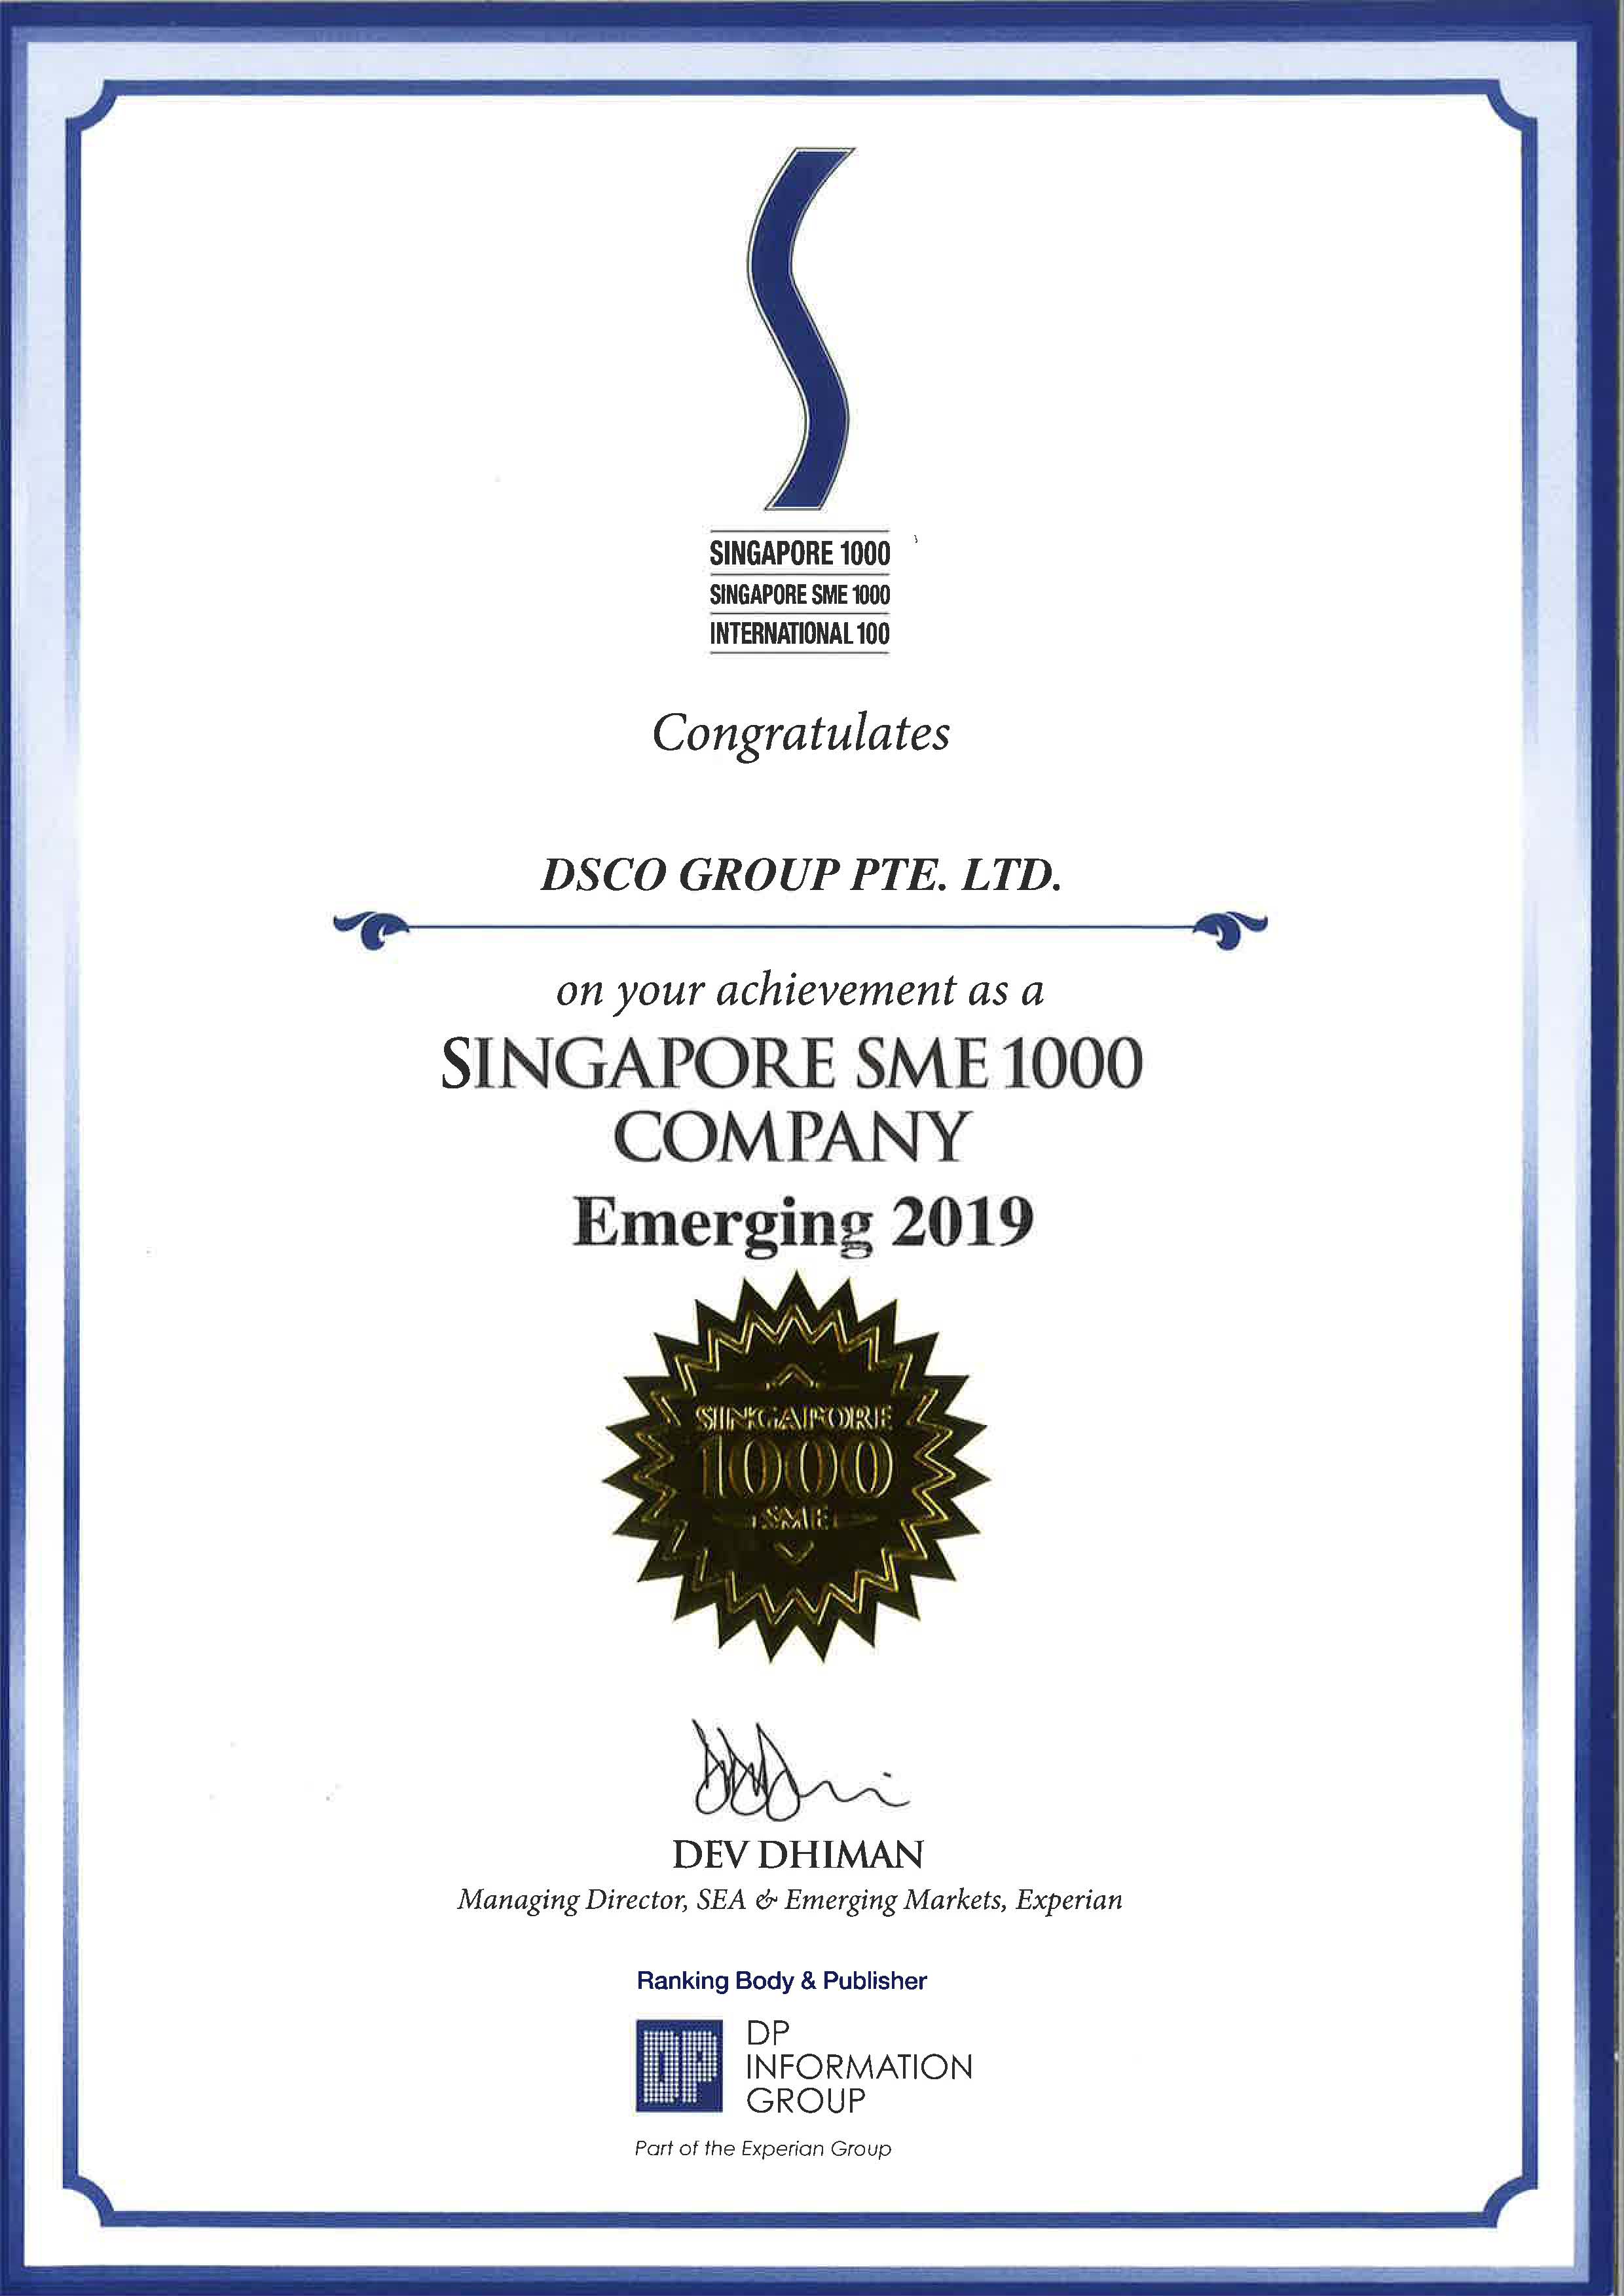 Singapore SME 1000 Company - Emerging 2019